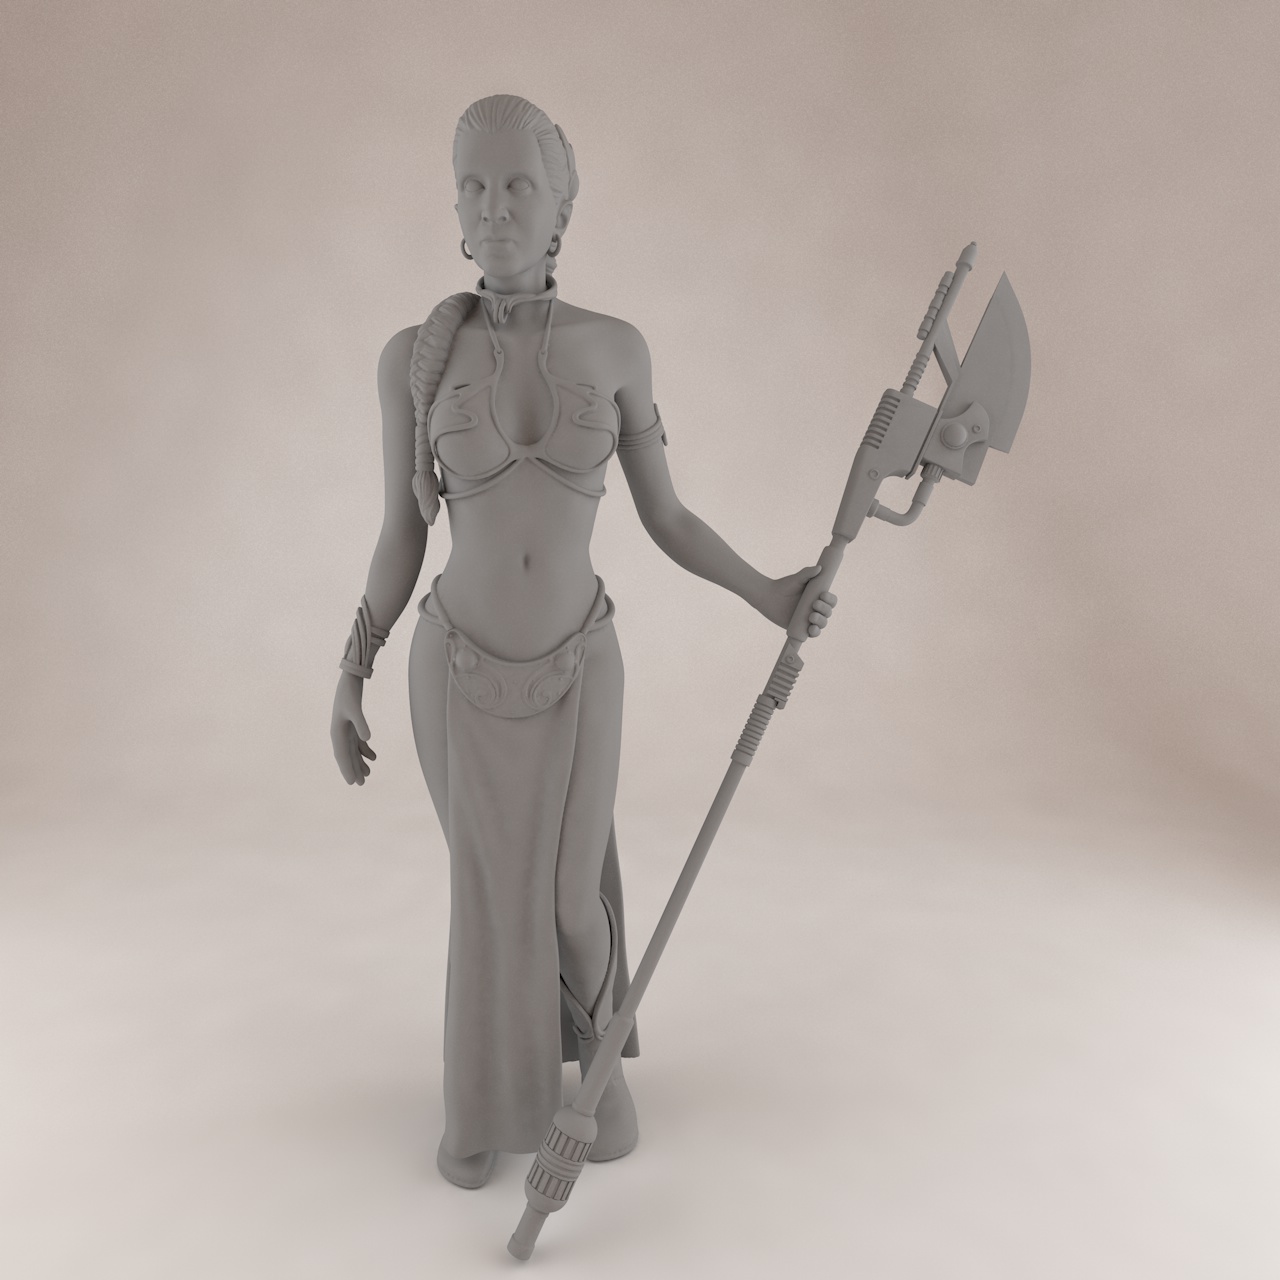 الأميرة ليا SLS 3D نموذج الطباعة